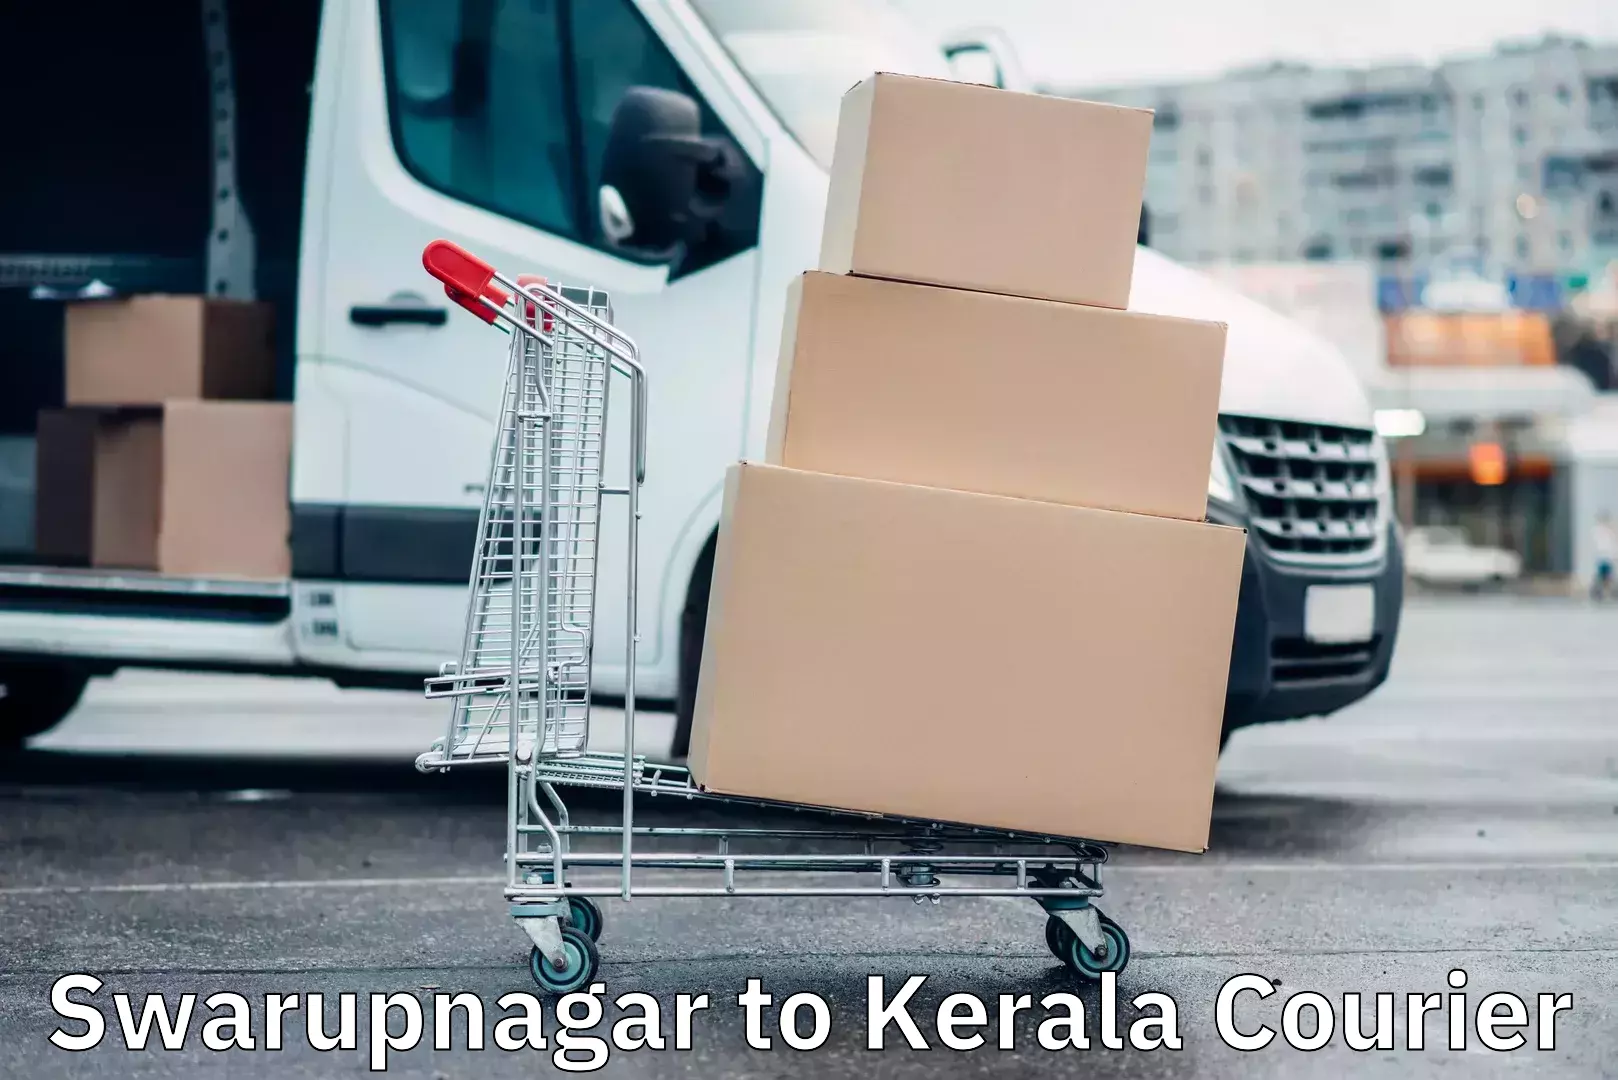 Expedited shipping solutions Swarupnagar to Kerala